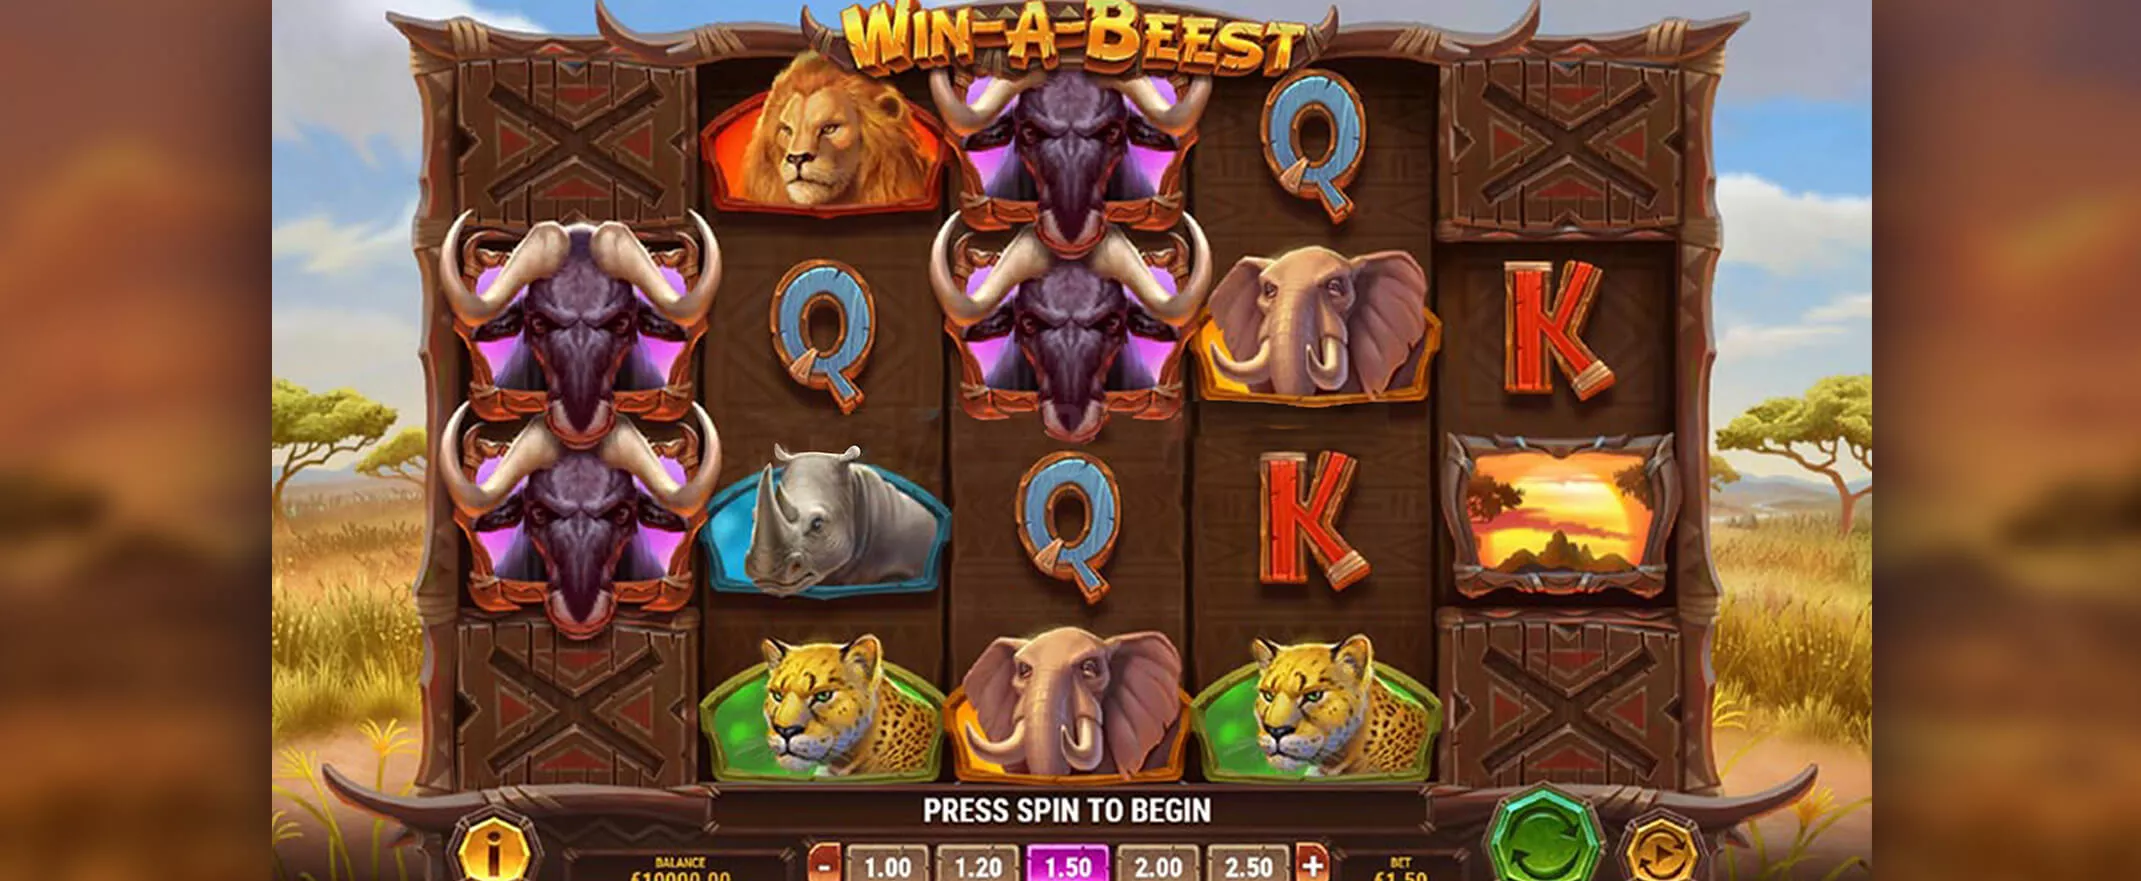 Win-A-Beest Slot Review Screenshot